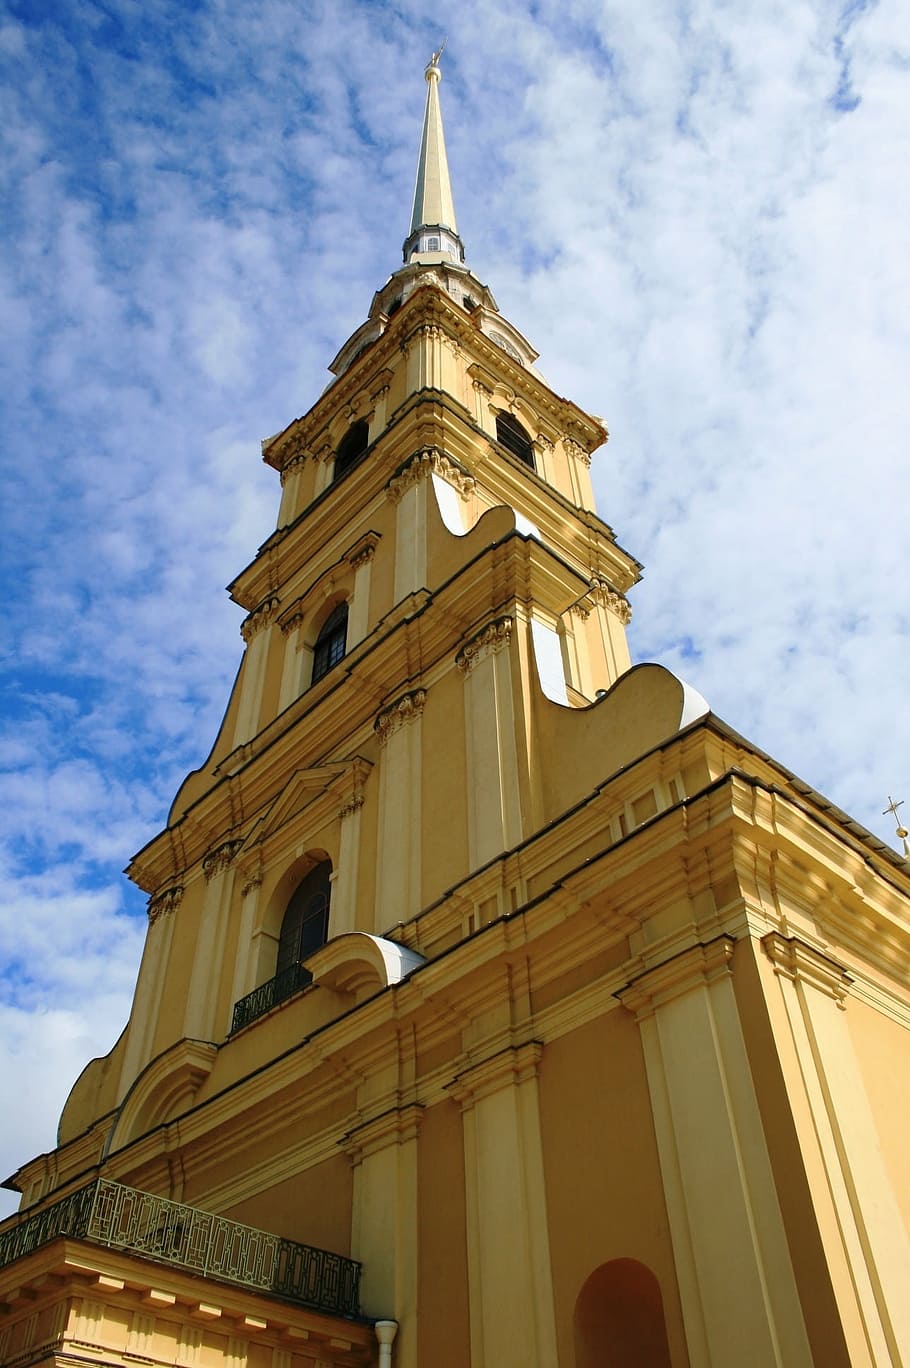 bajo, fotografía de ángulo, iglesia, catedral, arquitectura, edificio ocre amarillo, religión, ortodoxo ruso, torre con aguja, escalonado